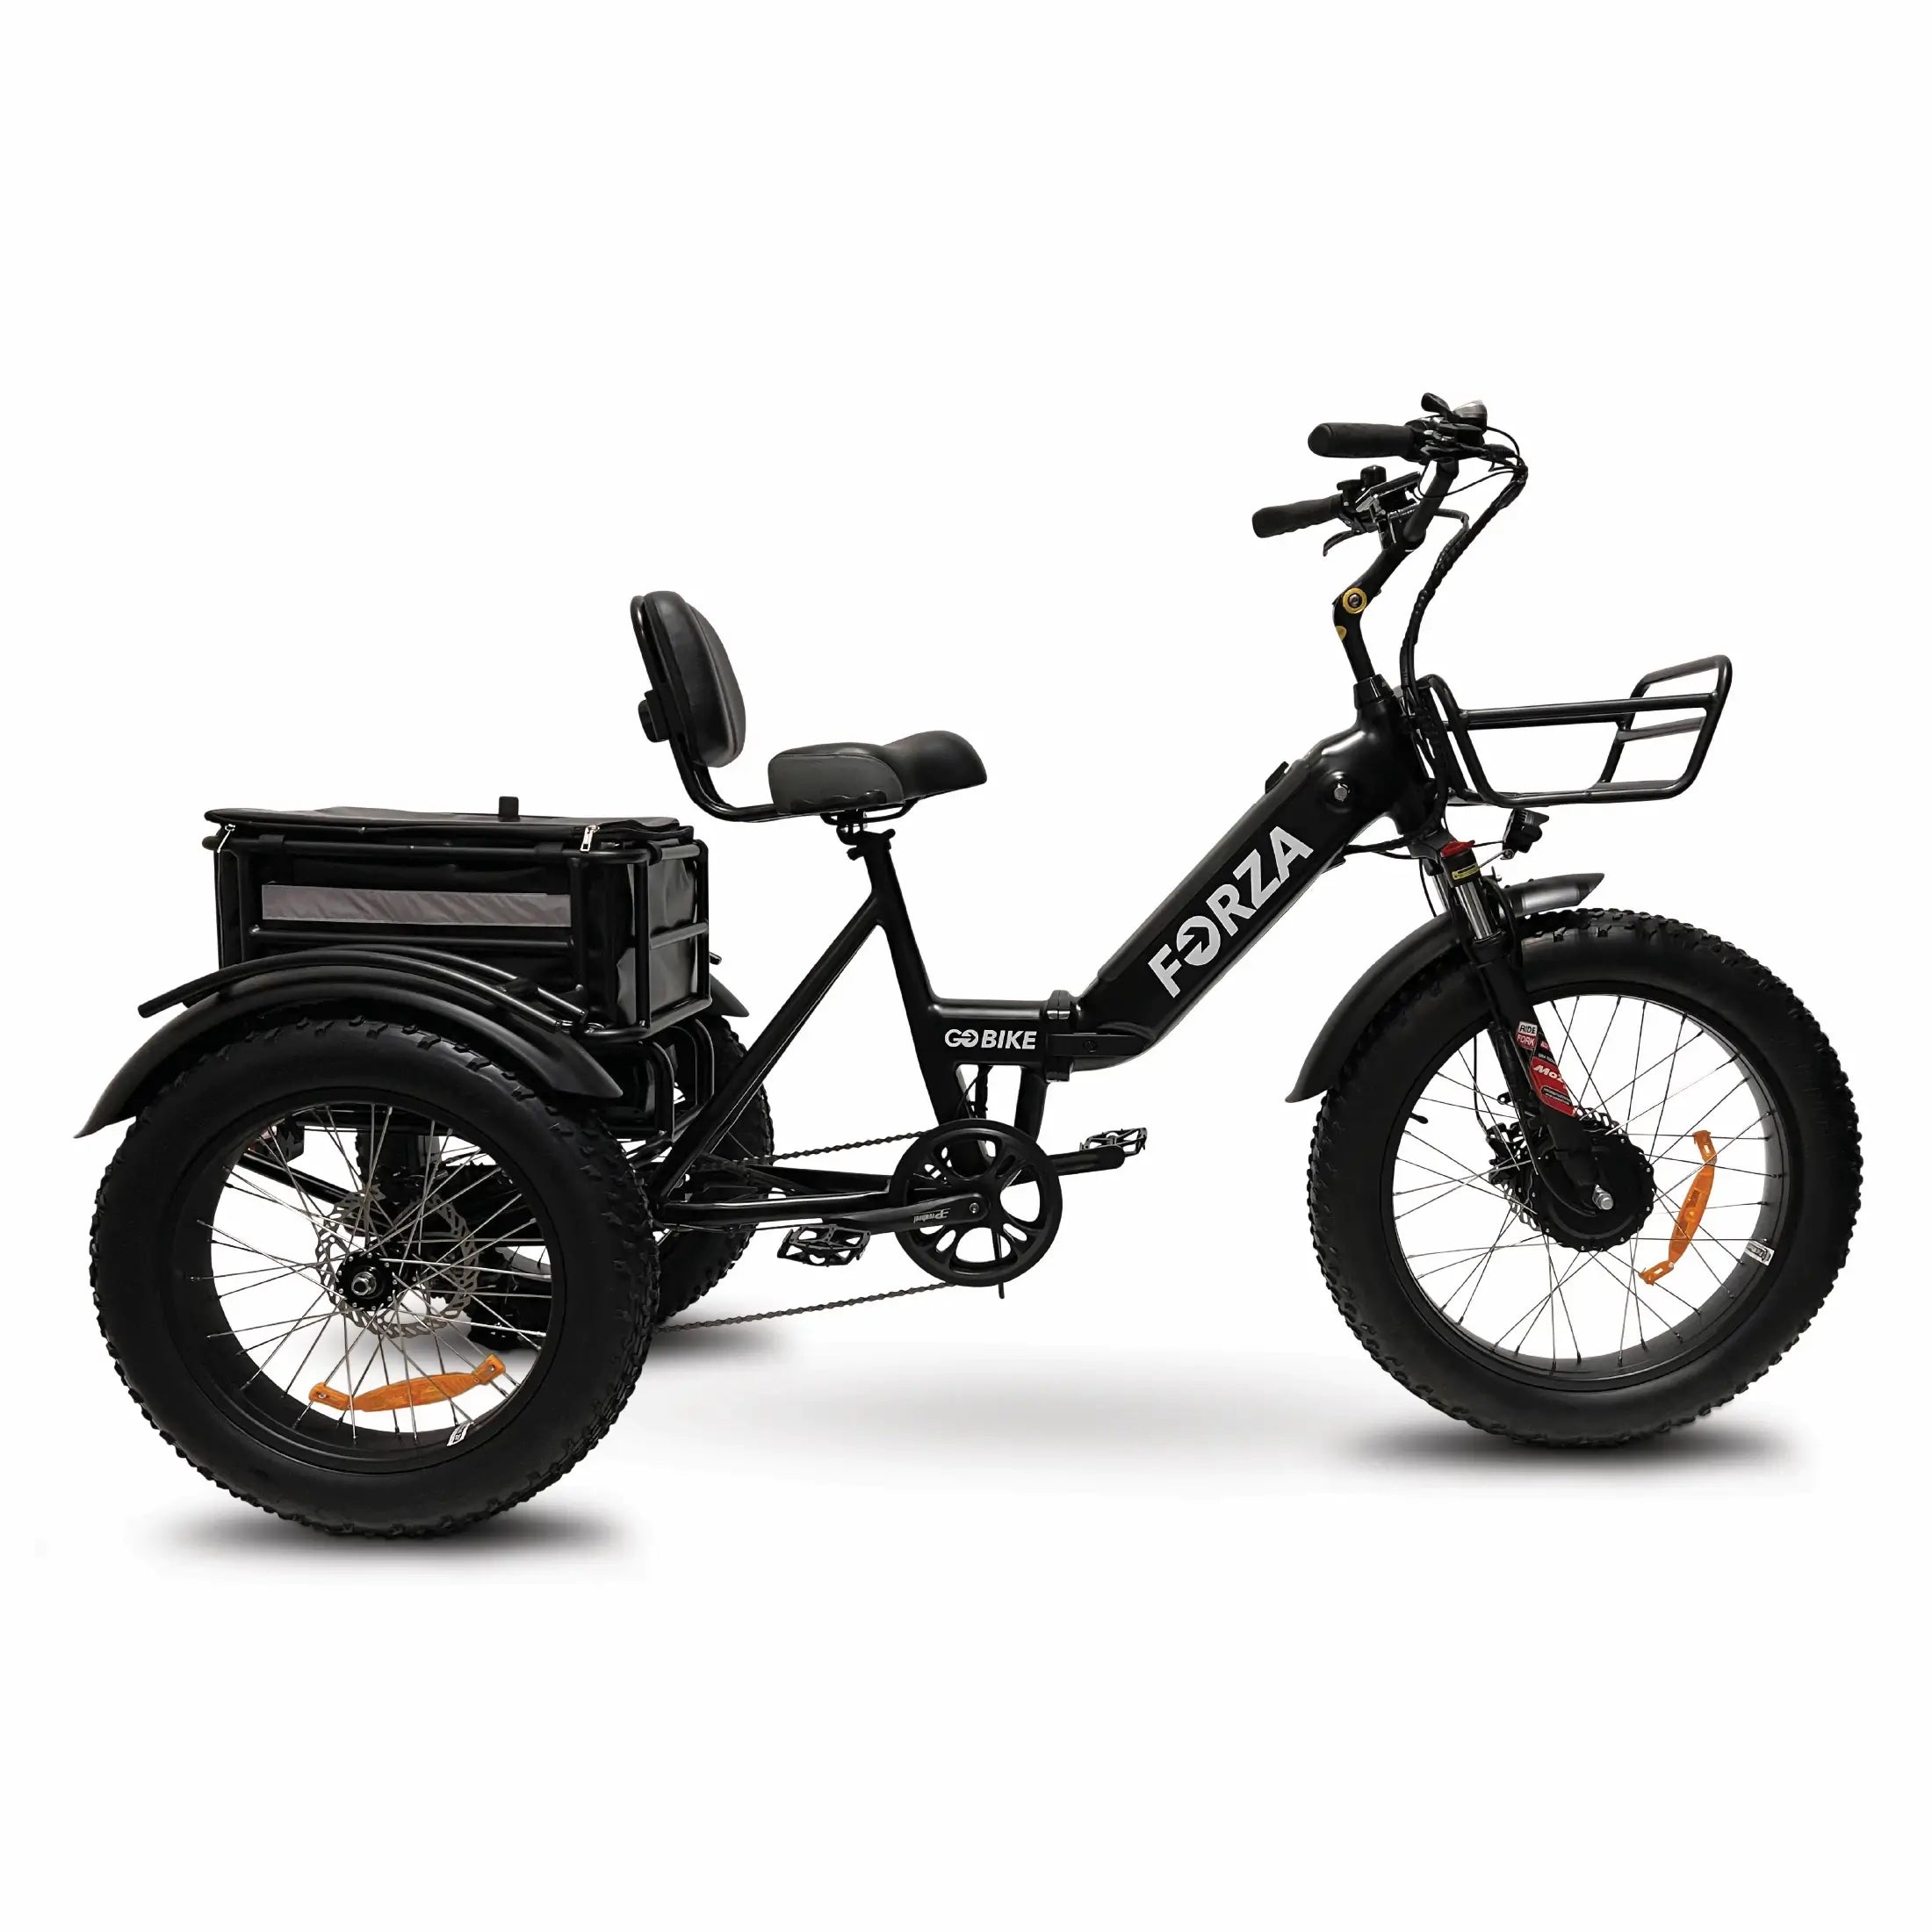 Forza Electric Trike - GOBike